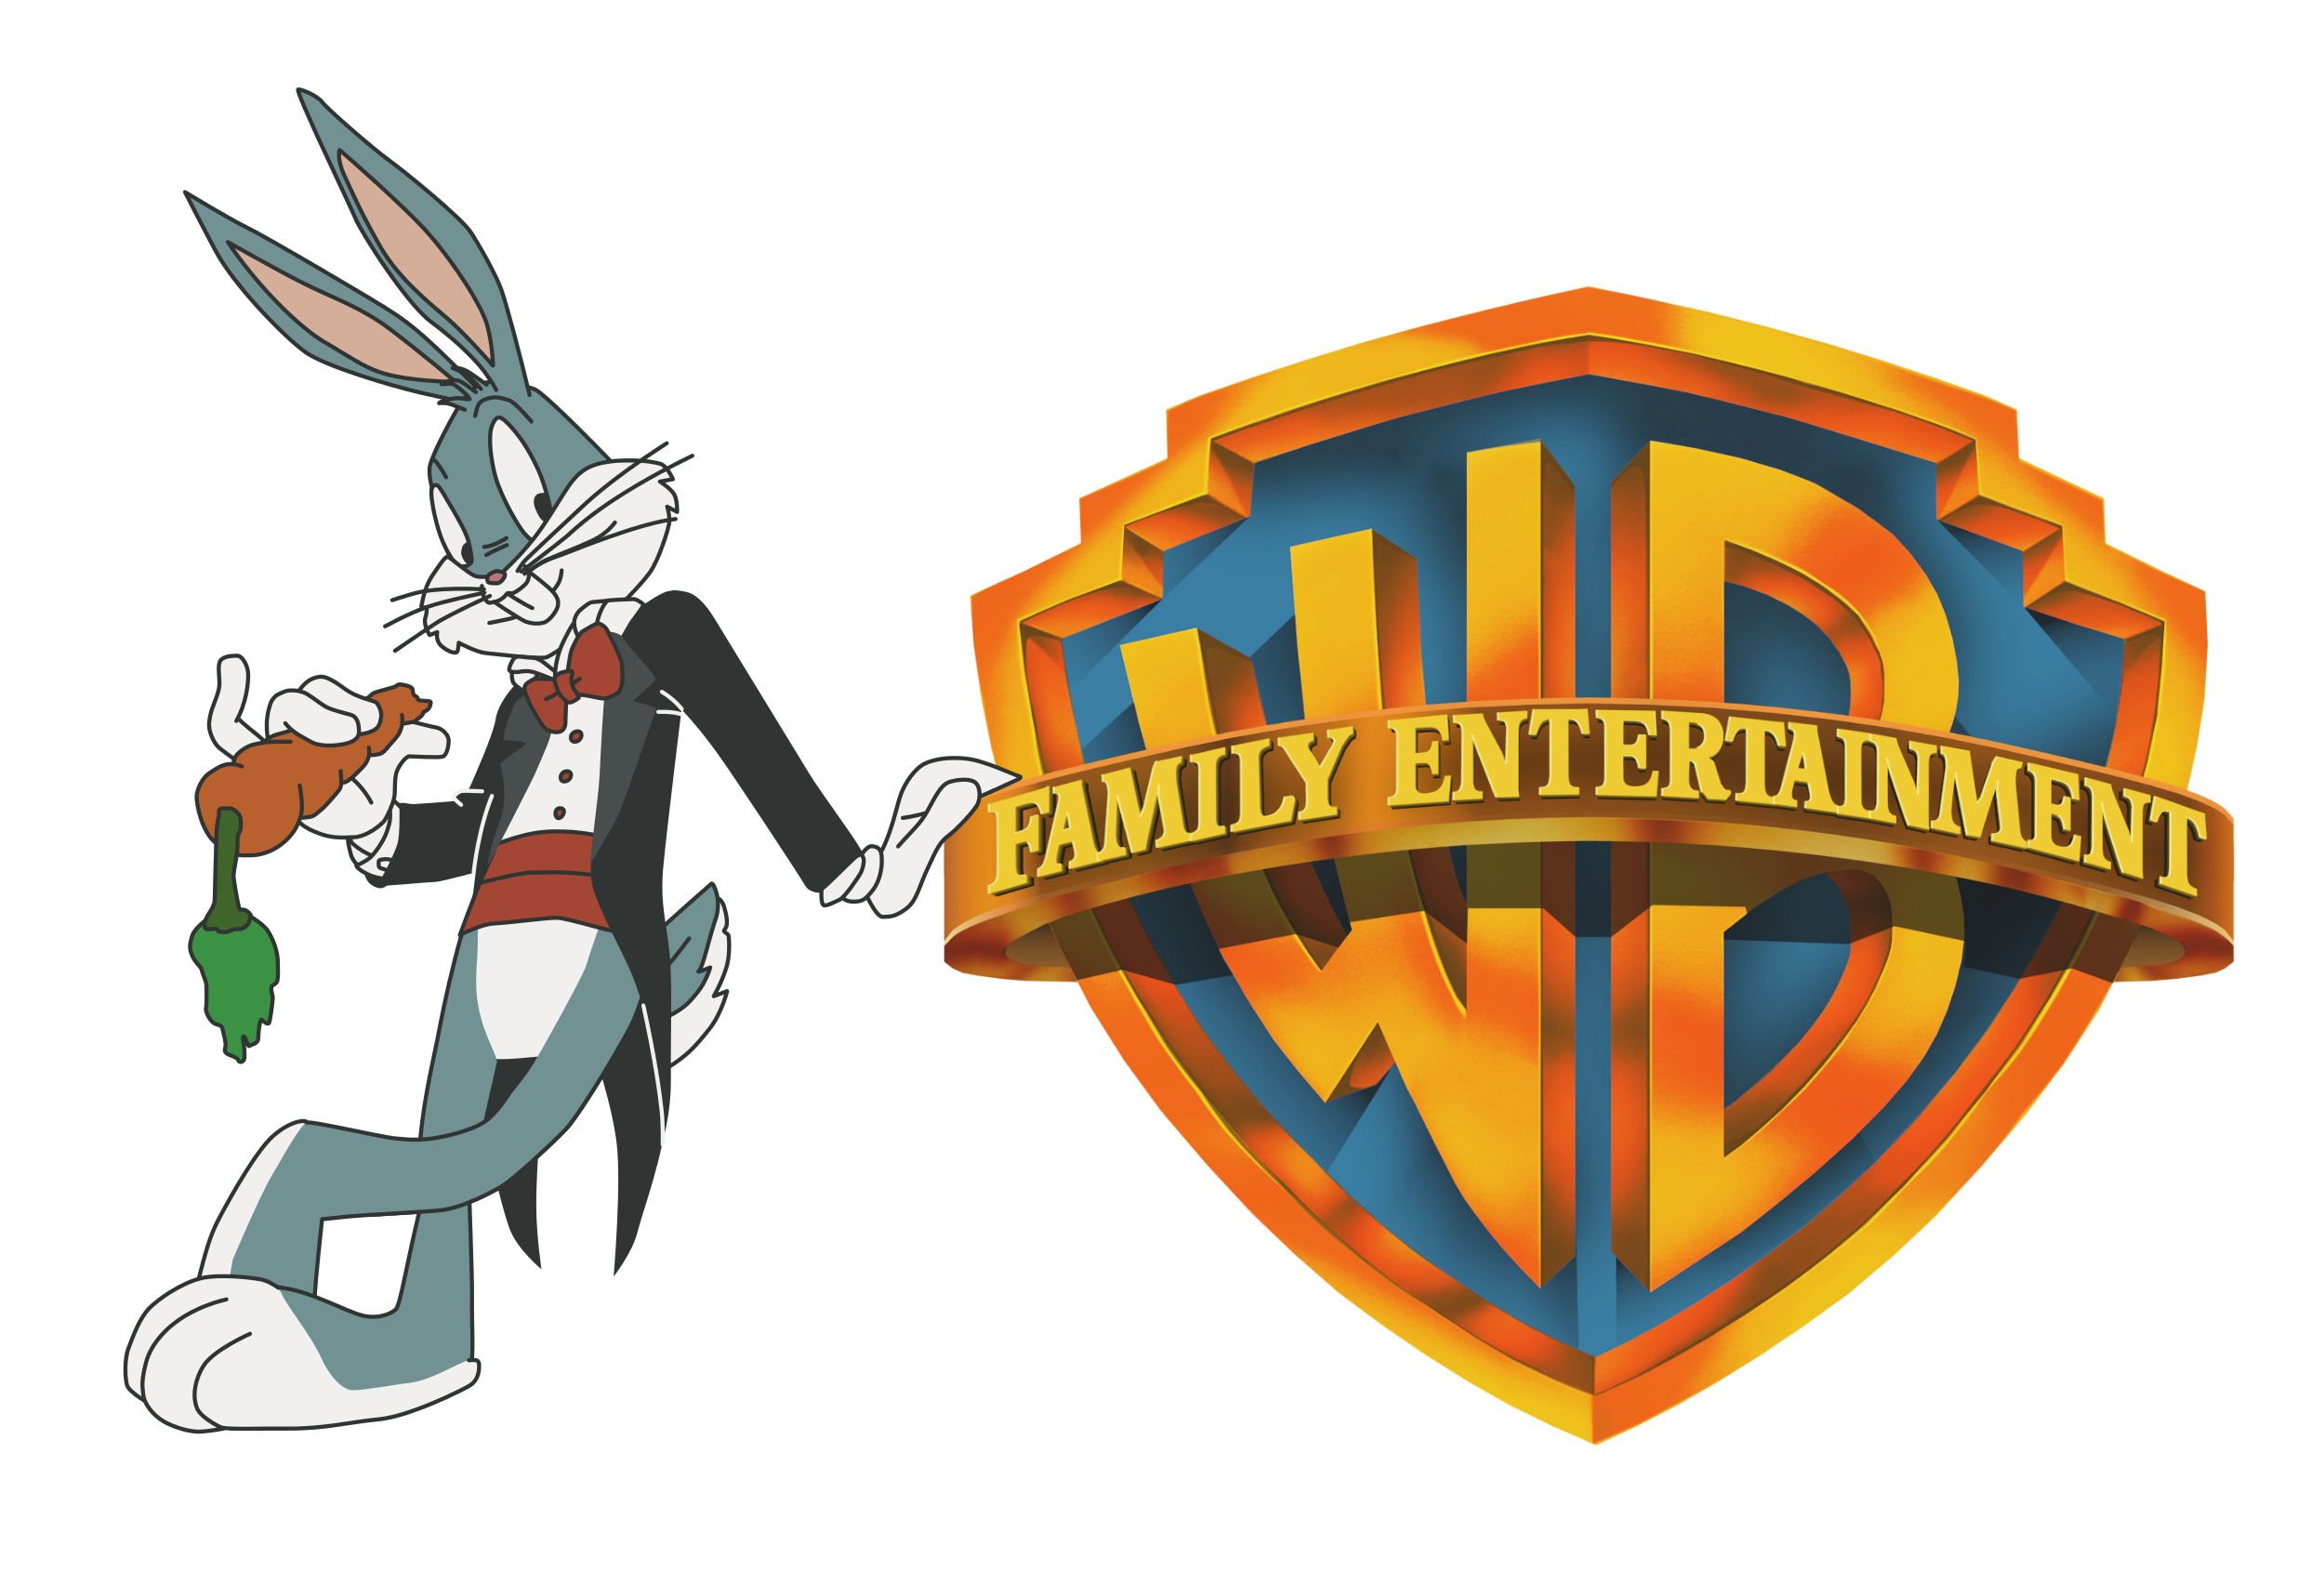 Warner Bros. Family Entertainment by Steve93021 on DeviantArt